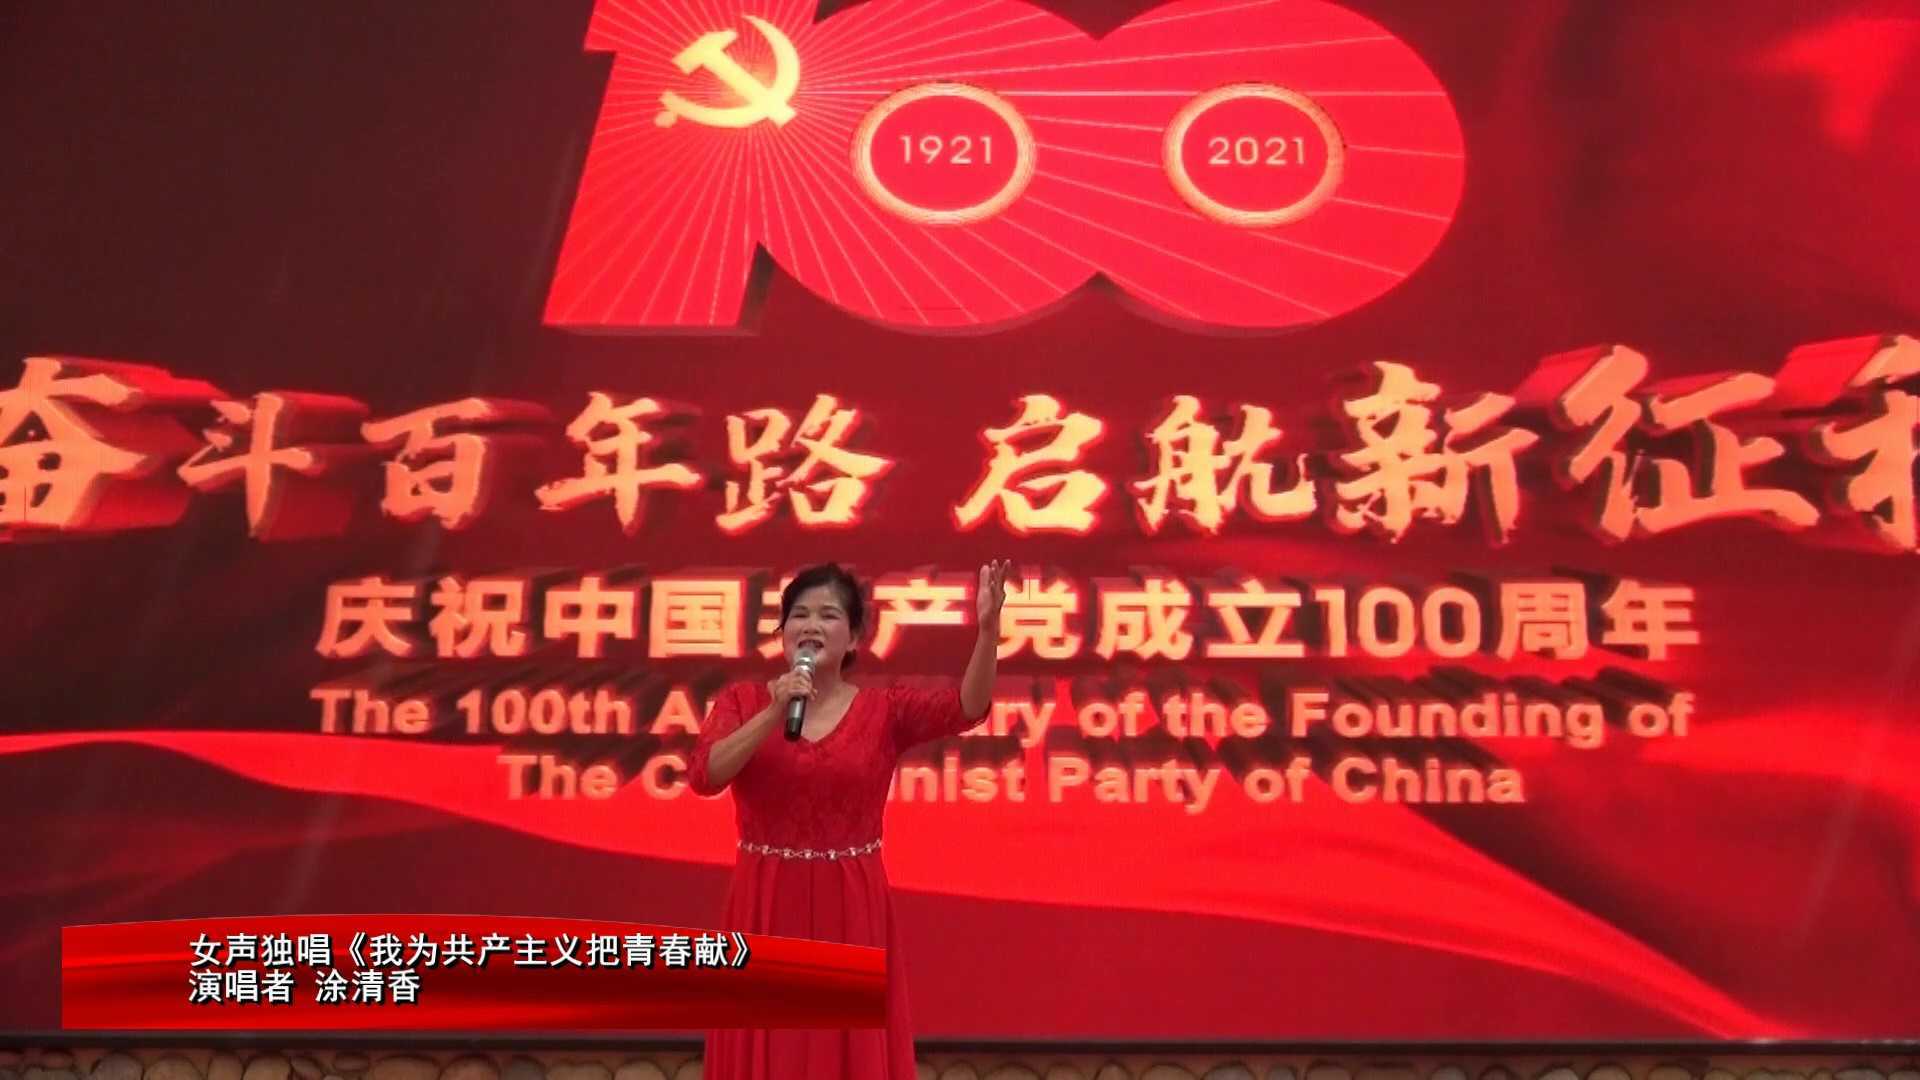 男女声对唱《红梅赞》、女声独唱《我为共产主义把青春献》涂清香 李道良等演唱